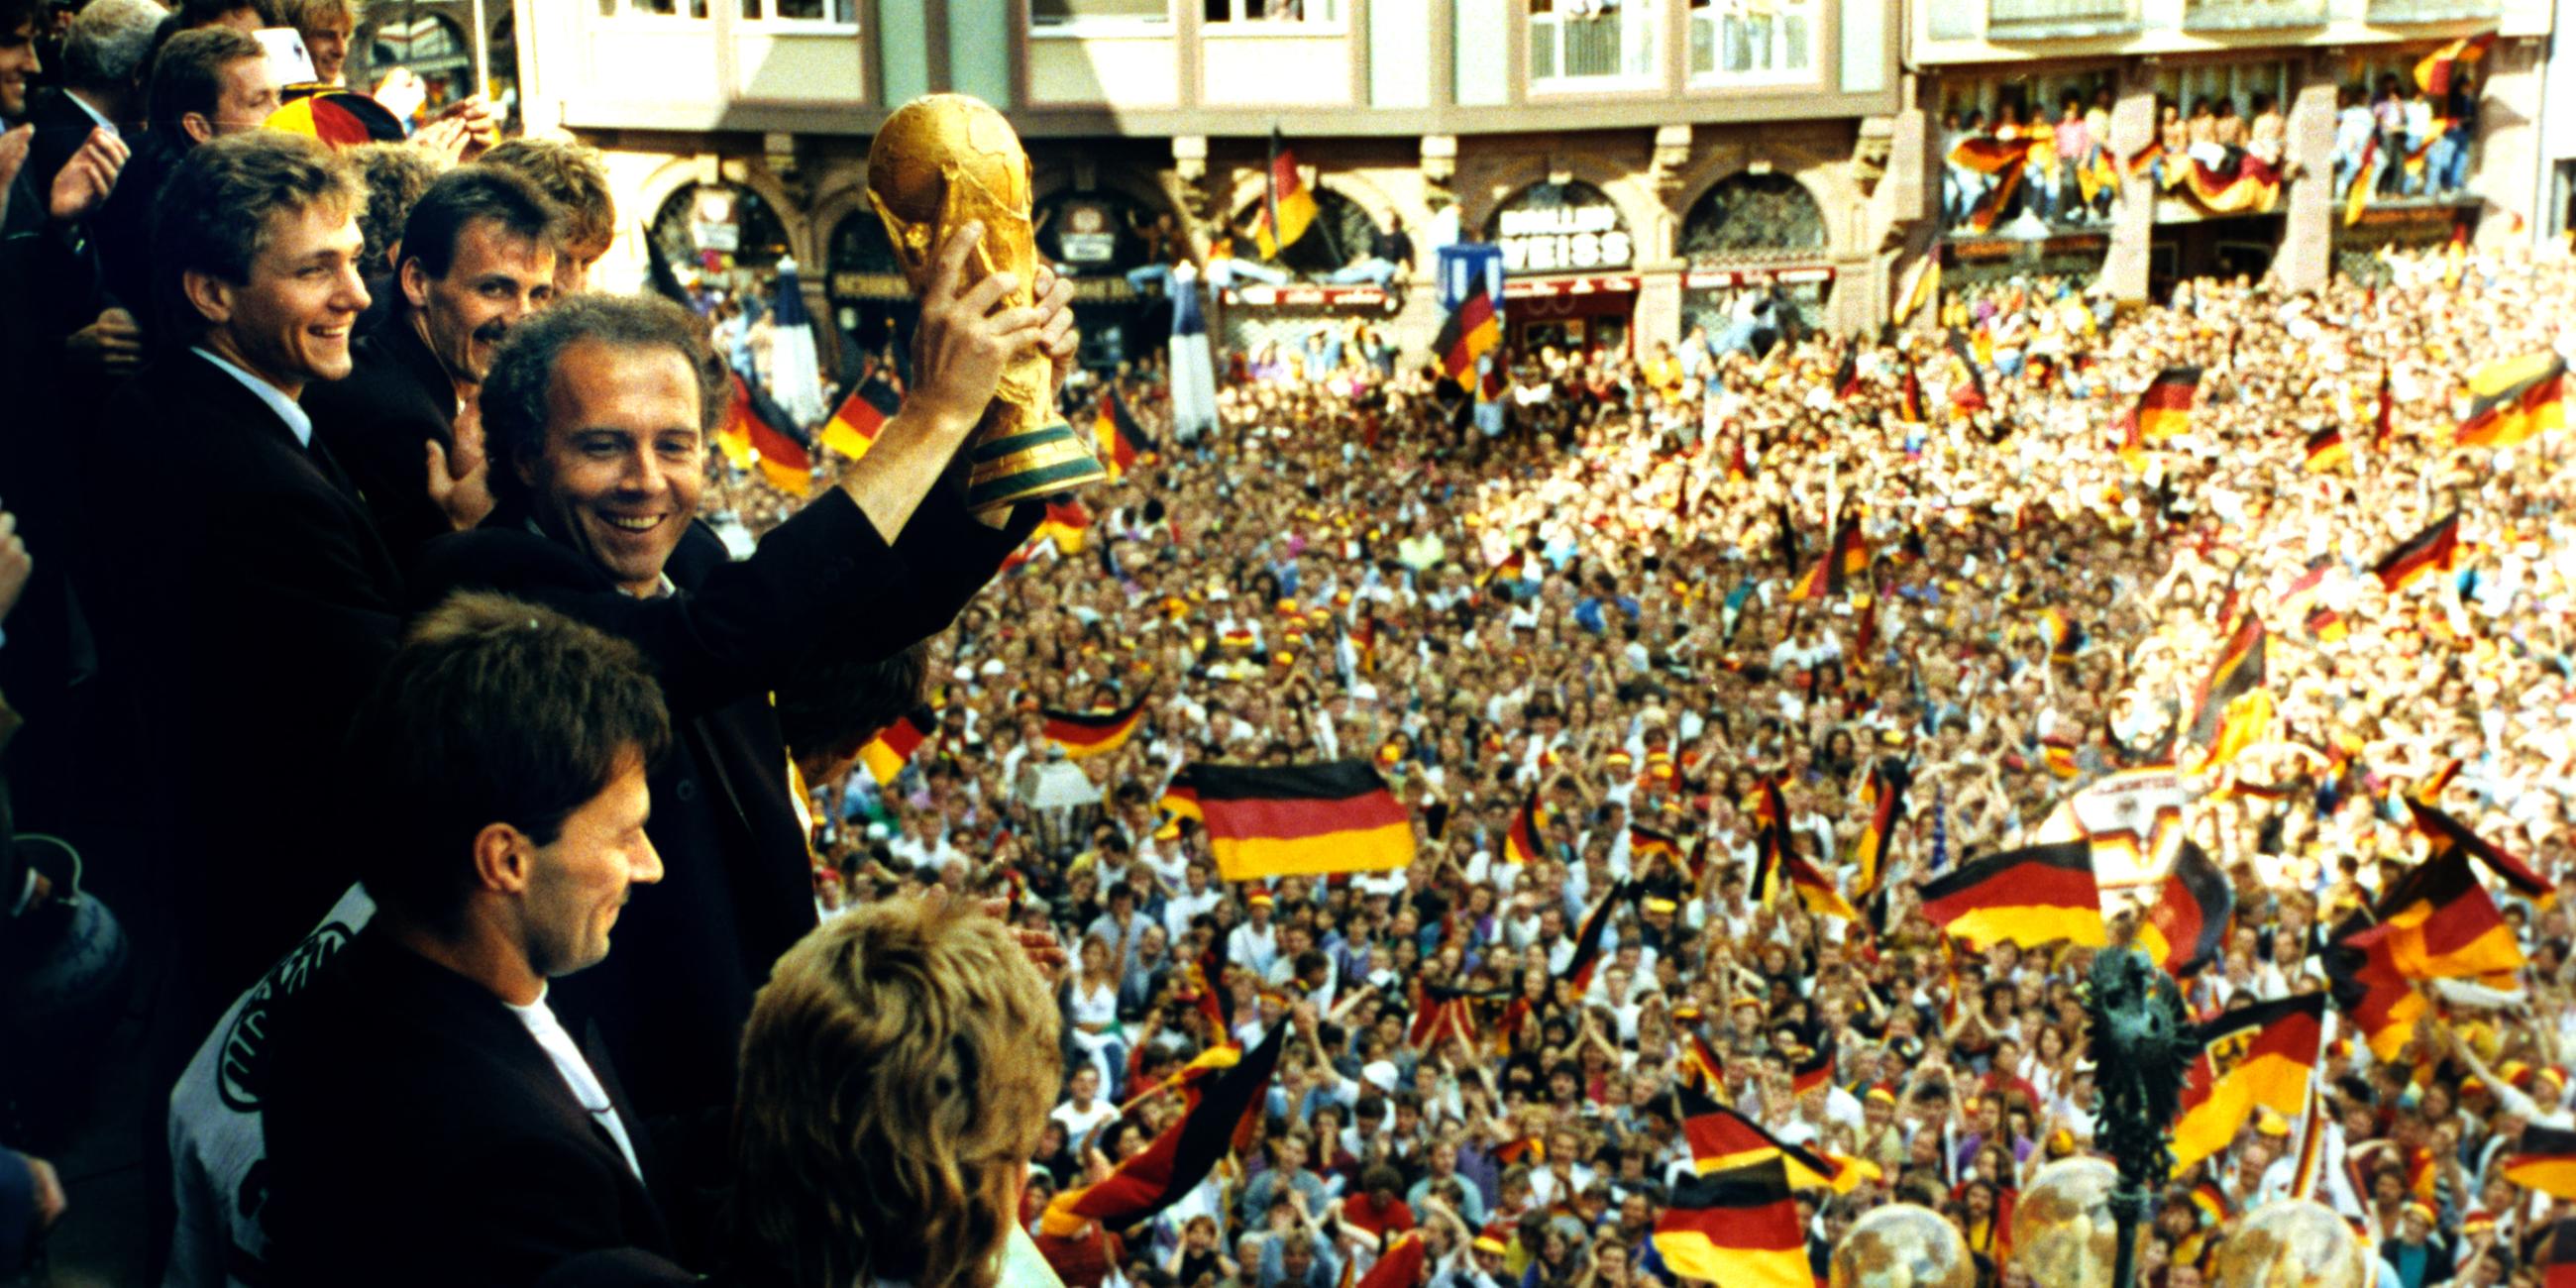 Empfang der Deutschen Nationalmannschaft in Frankfurt nach dem Gewinn der Fußball-WM '90